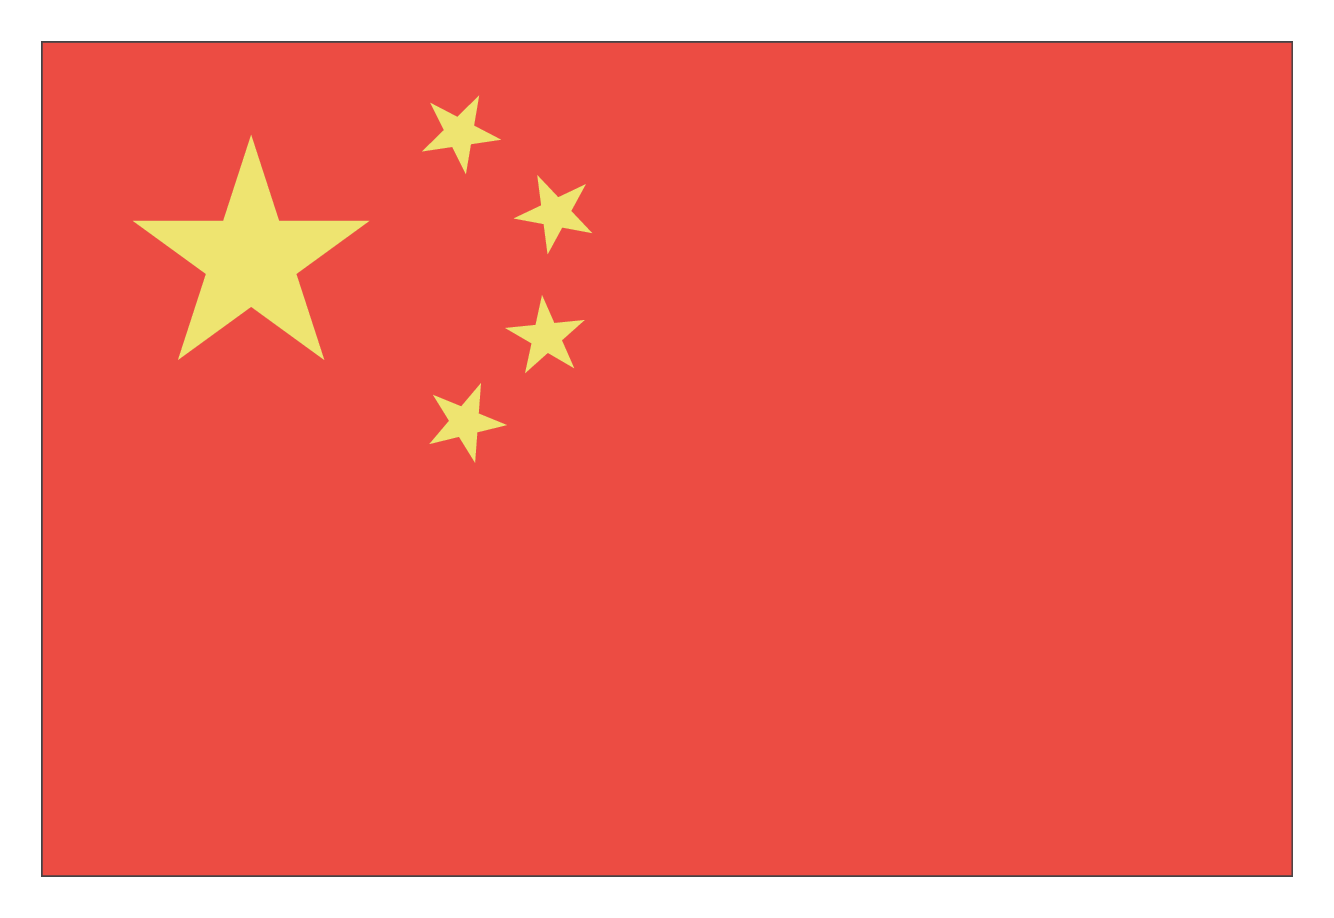 Bandeira da China, composta por um retângulo vermelho com cinco estrelas amarelas no canto superior esquerdo.